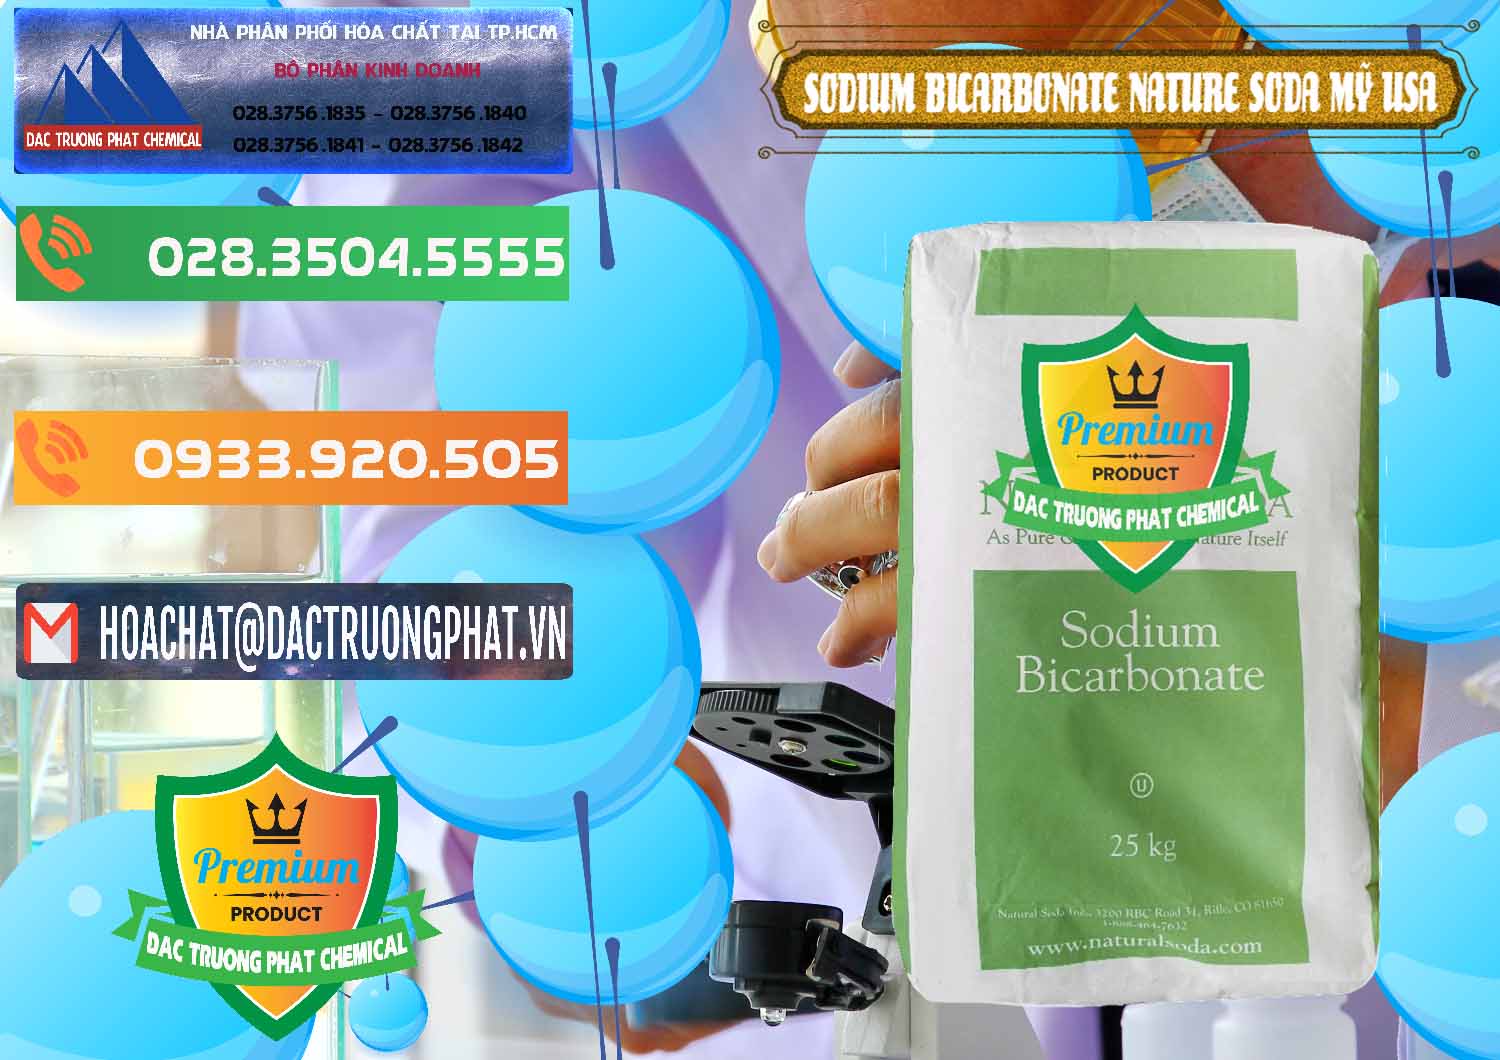 Công ty chuyên cung ứng _ bán Sodium Bicarbonate – Bicar NaHCO3 Food Grade Nature Soda Mỹ USA - 0256 - Cung cấp và phân phối hóa chất tại TP.HCM - hoachatxulynuoc.com.vn